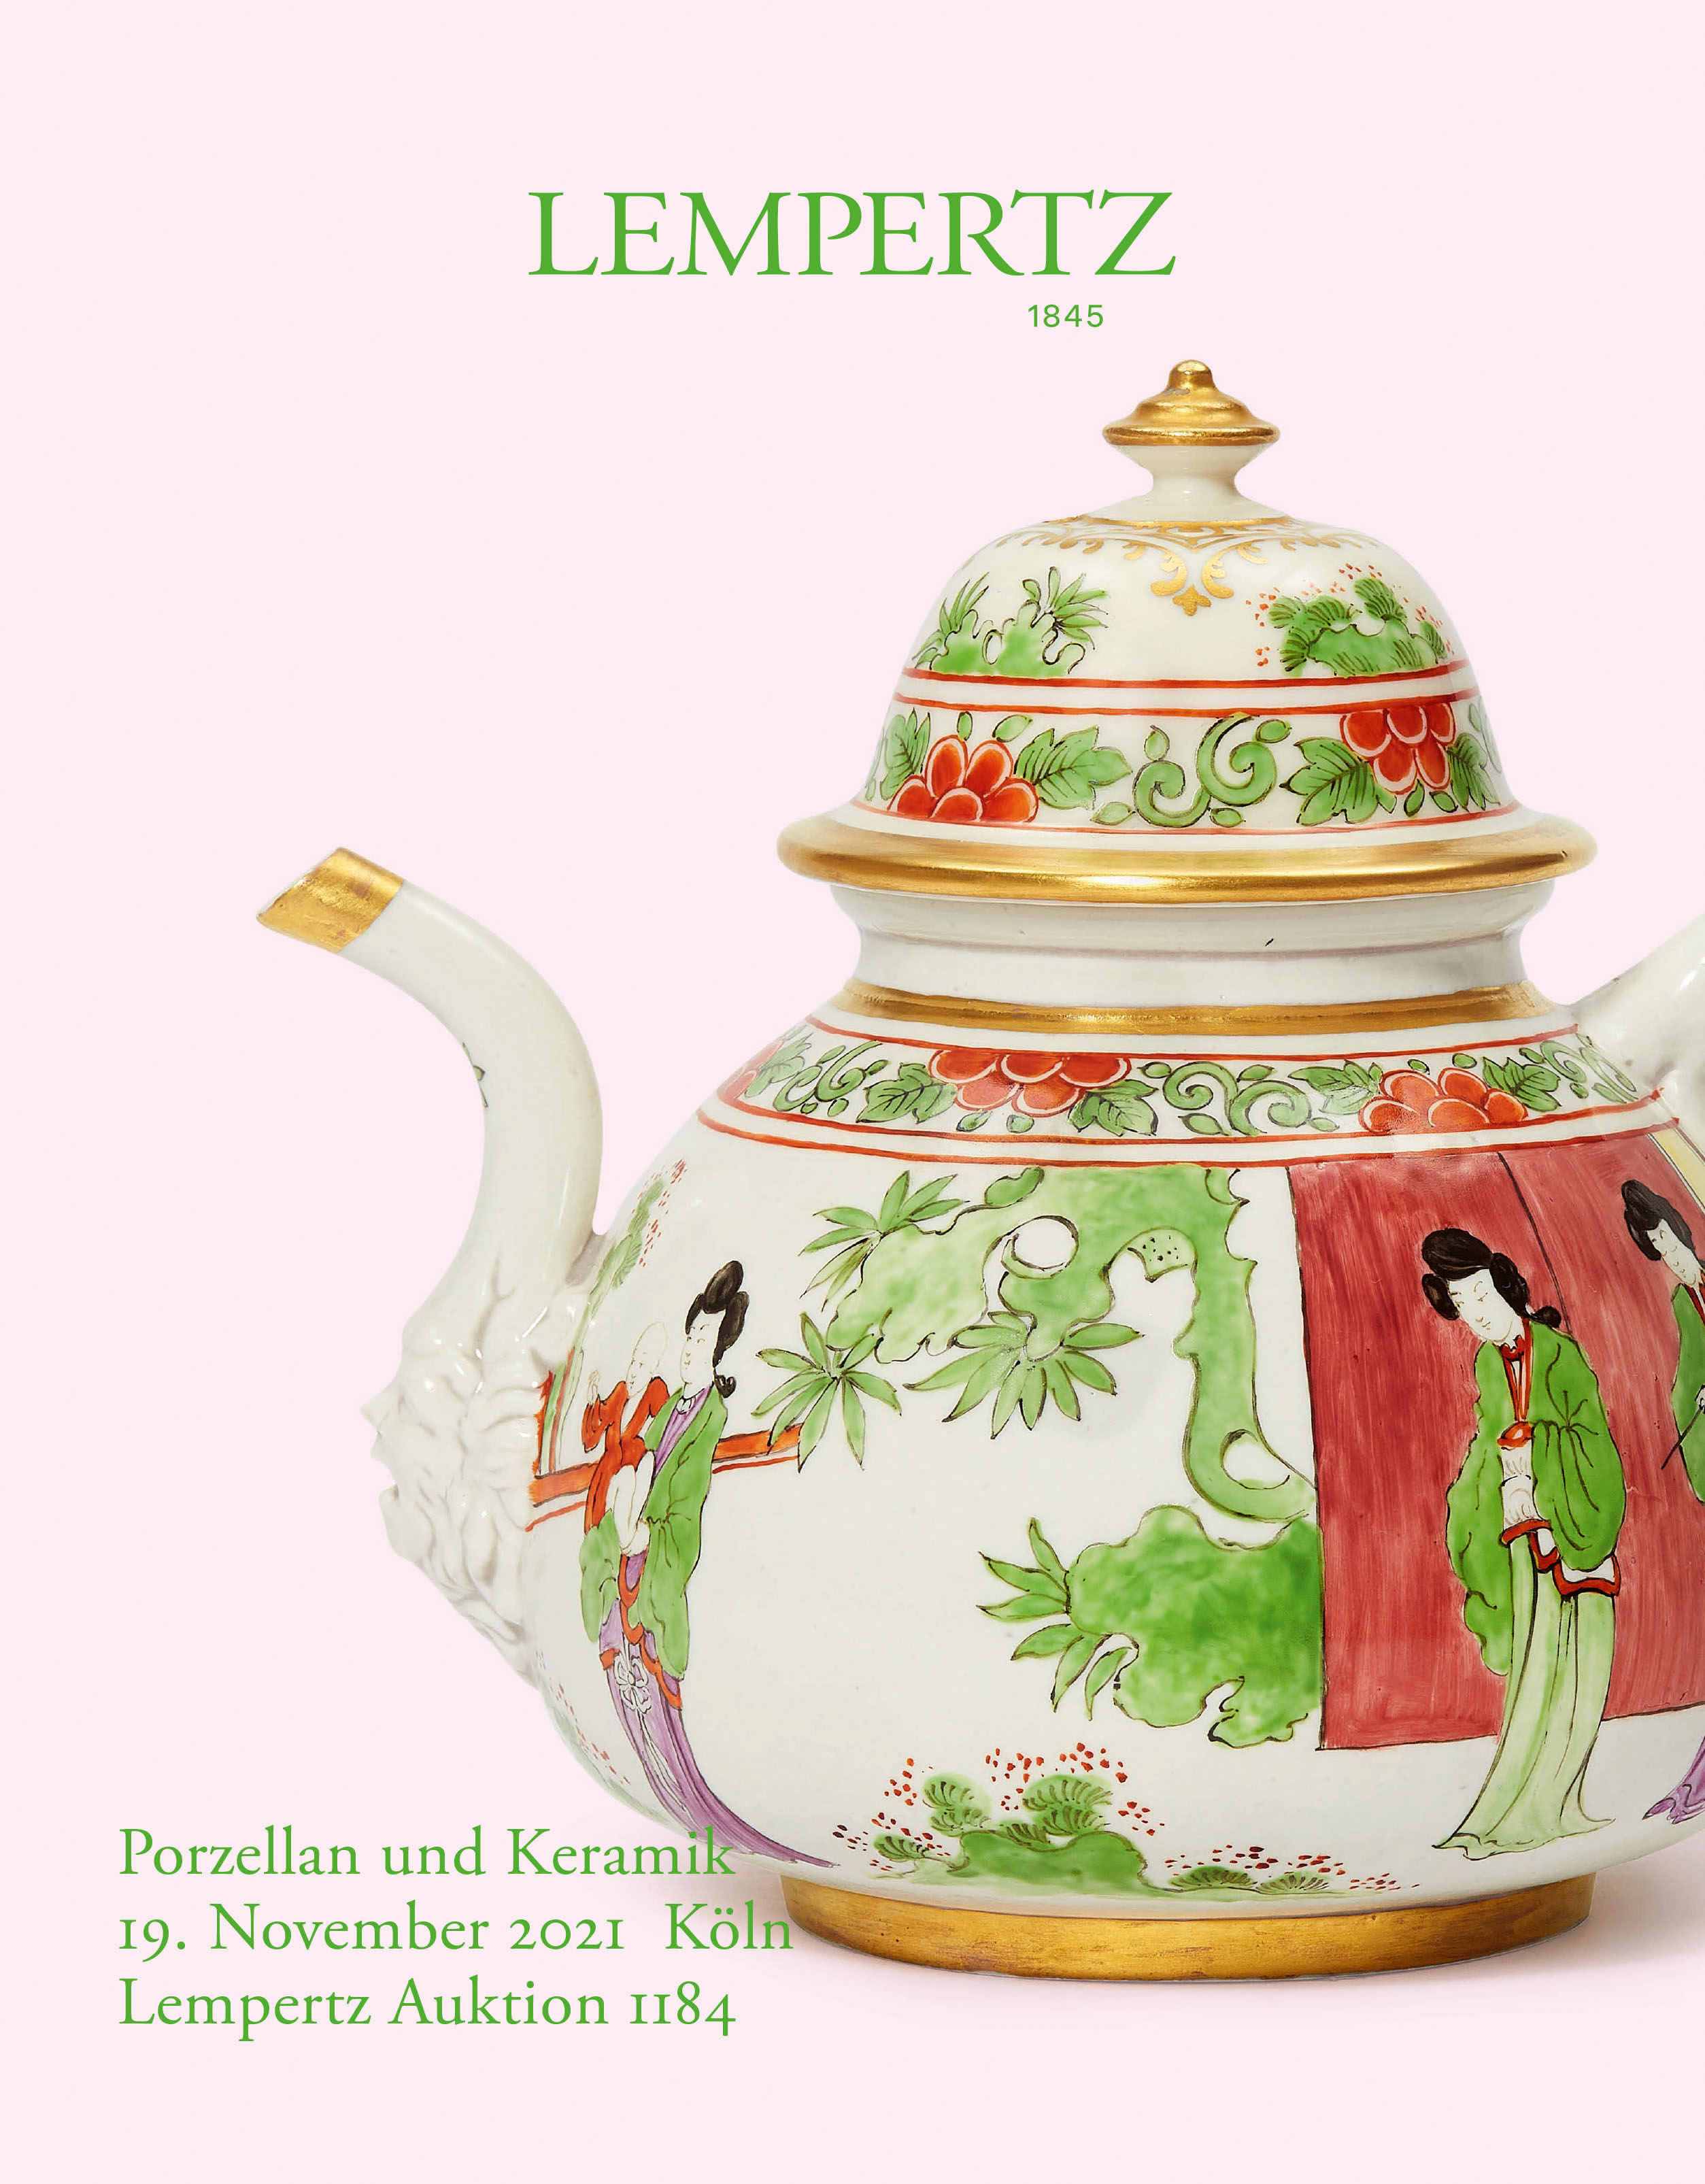 Auktionskatalog - Porzellan und Keramik - Online Katalog - Auktion 1184 – Ersteigern Sie hochwertige Kunst in der nächsten Lempertz-Auktion!